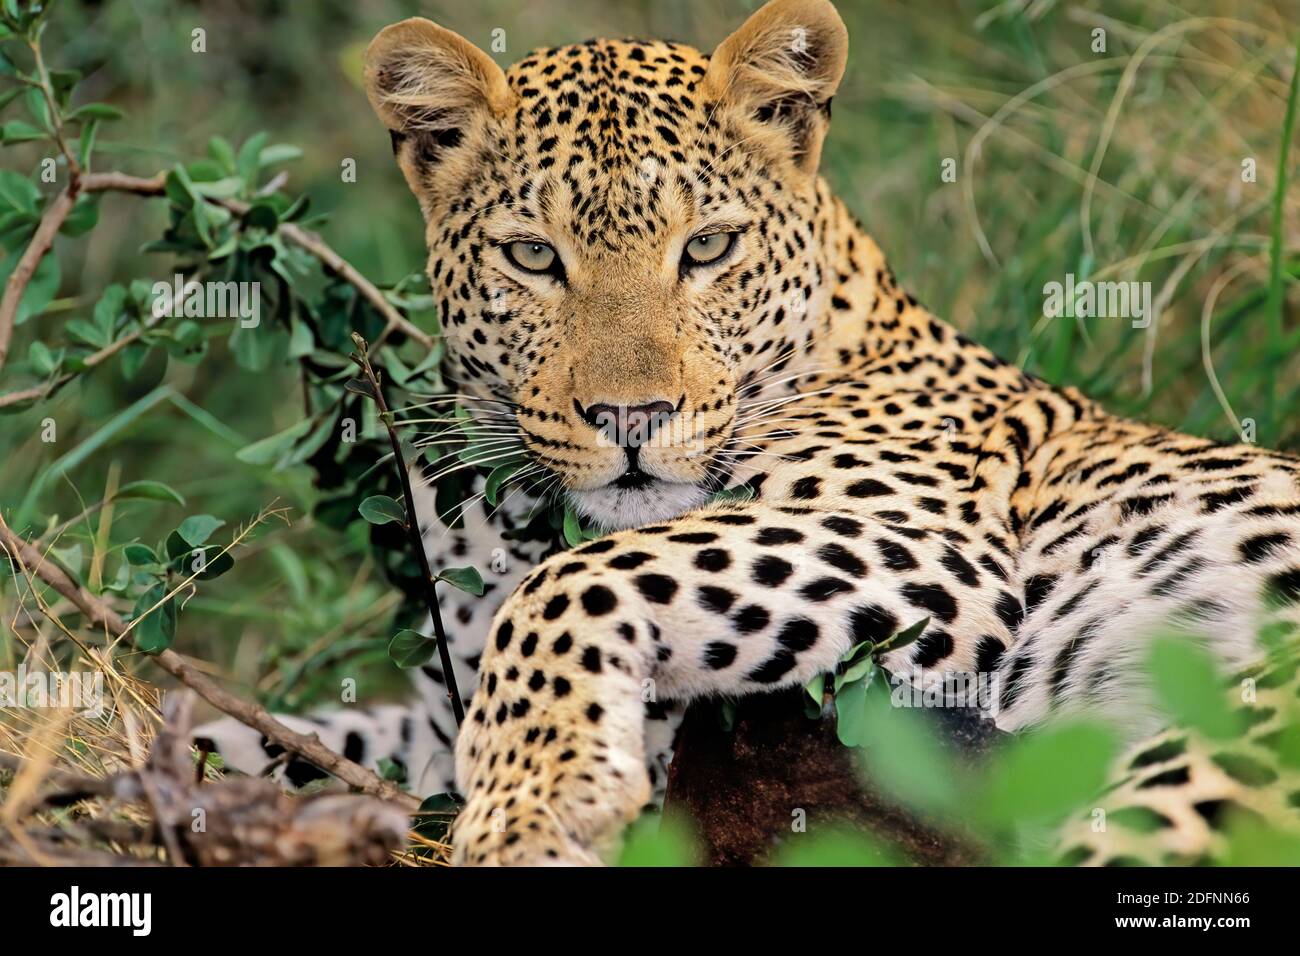 Un léopard (Panthera pardus) reposant dans un habitat naturel, en Afrique du Sud Banque D'Images